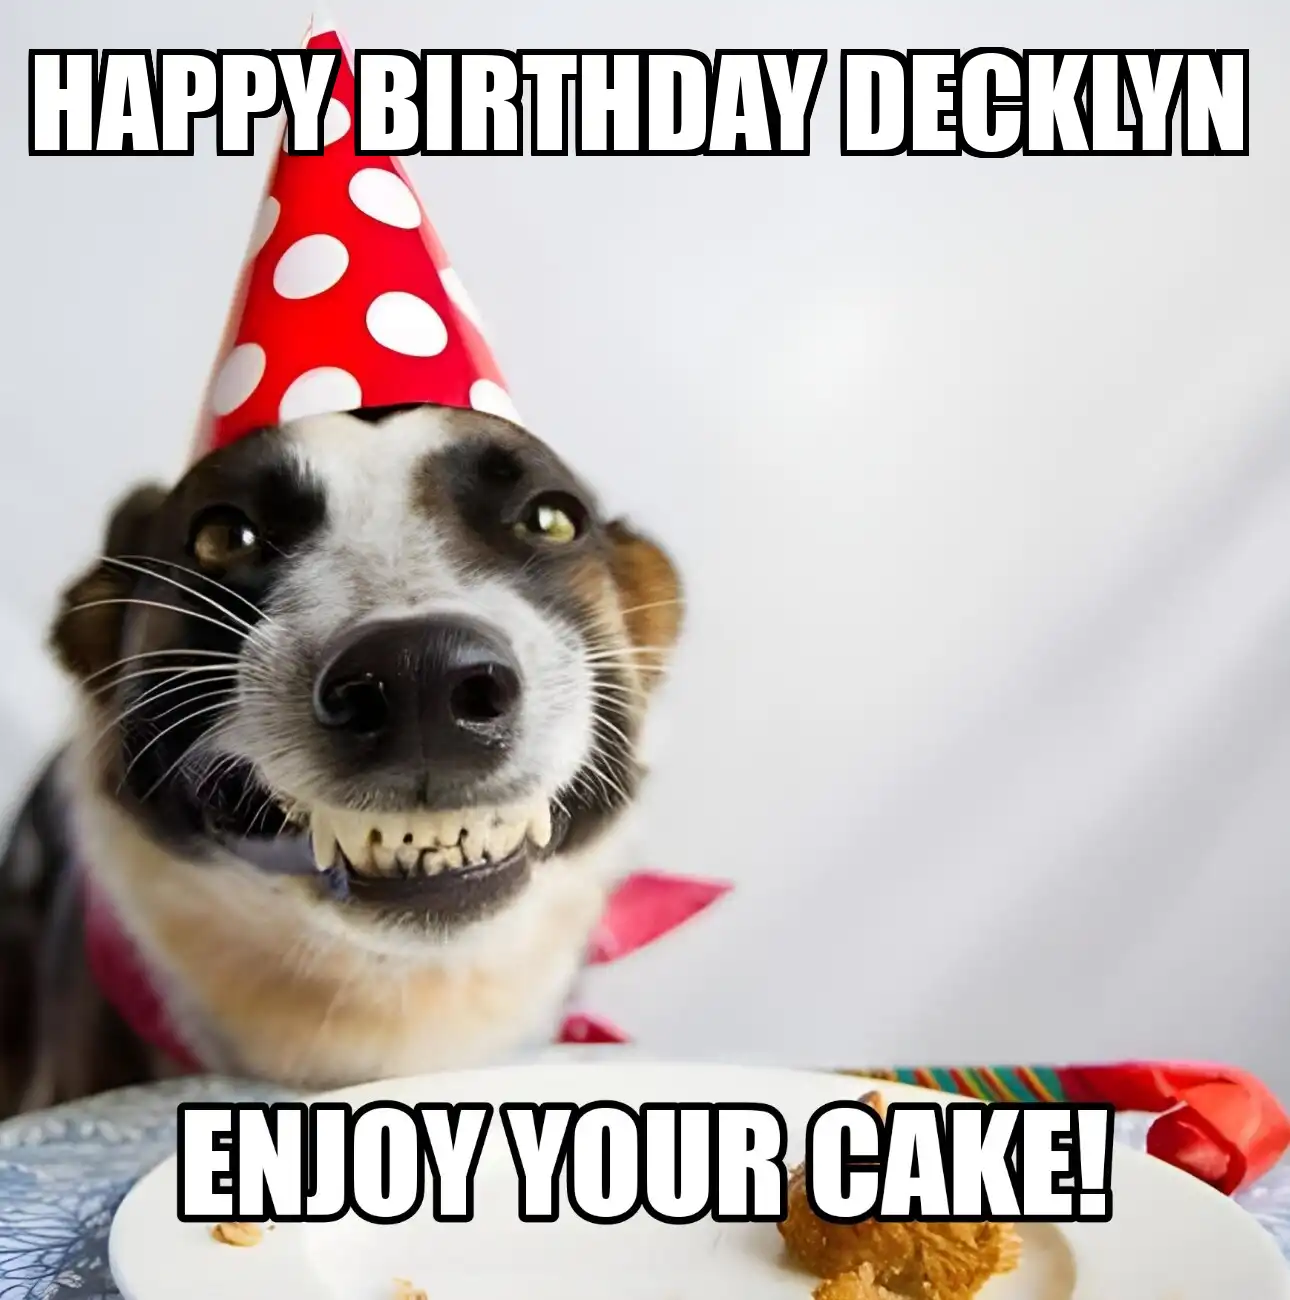 Happy Birthday Decklyn Enjoy Your Cake Dog Meme